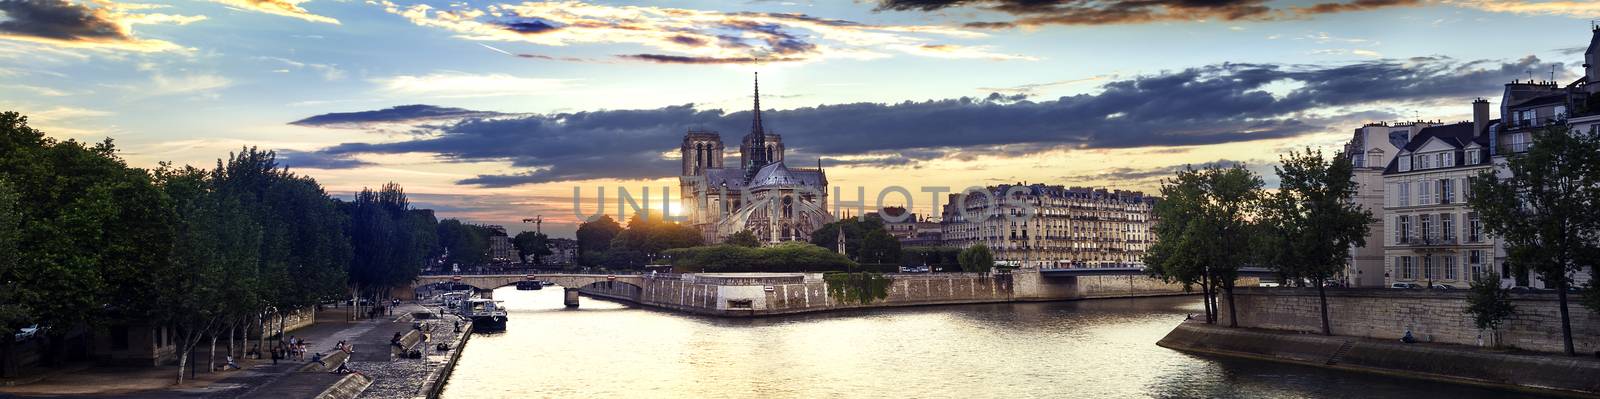 Ile de la Cite and Notre Dame at sunset, Paris, France